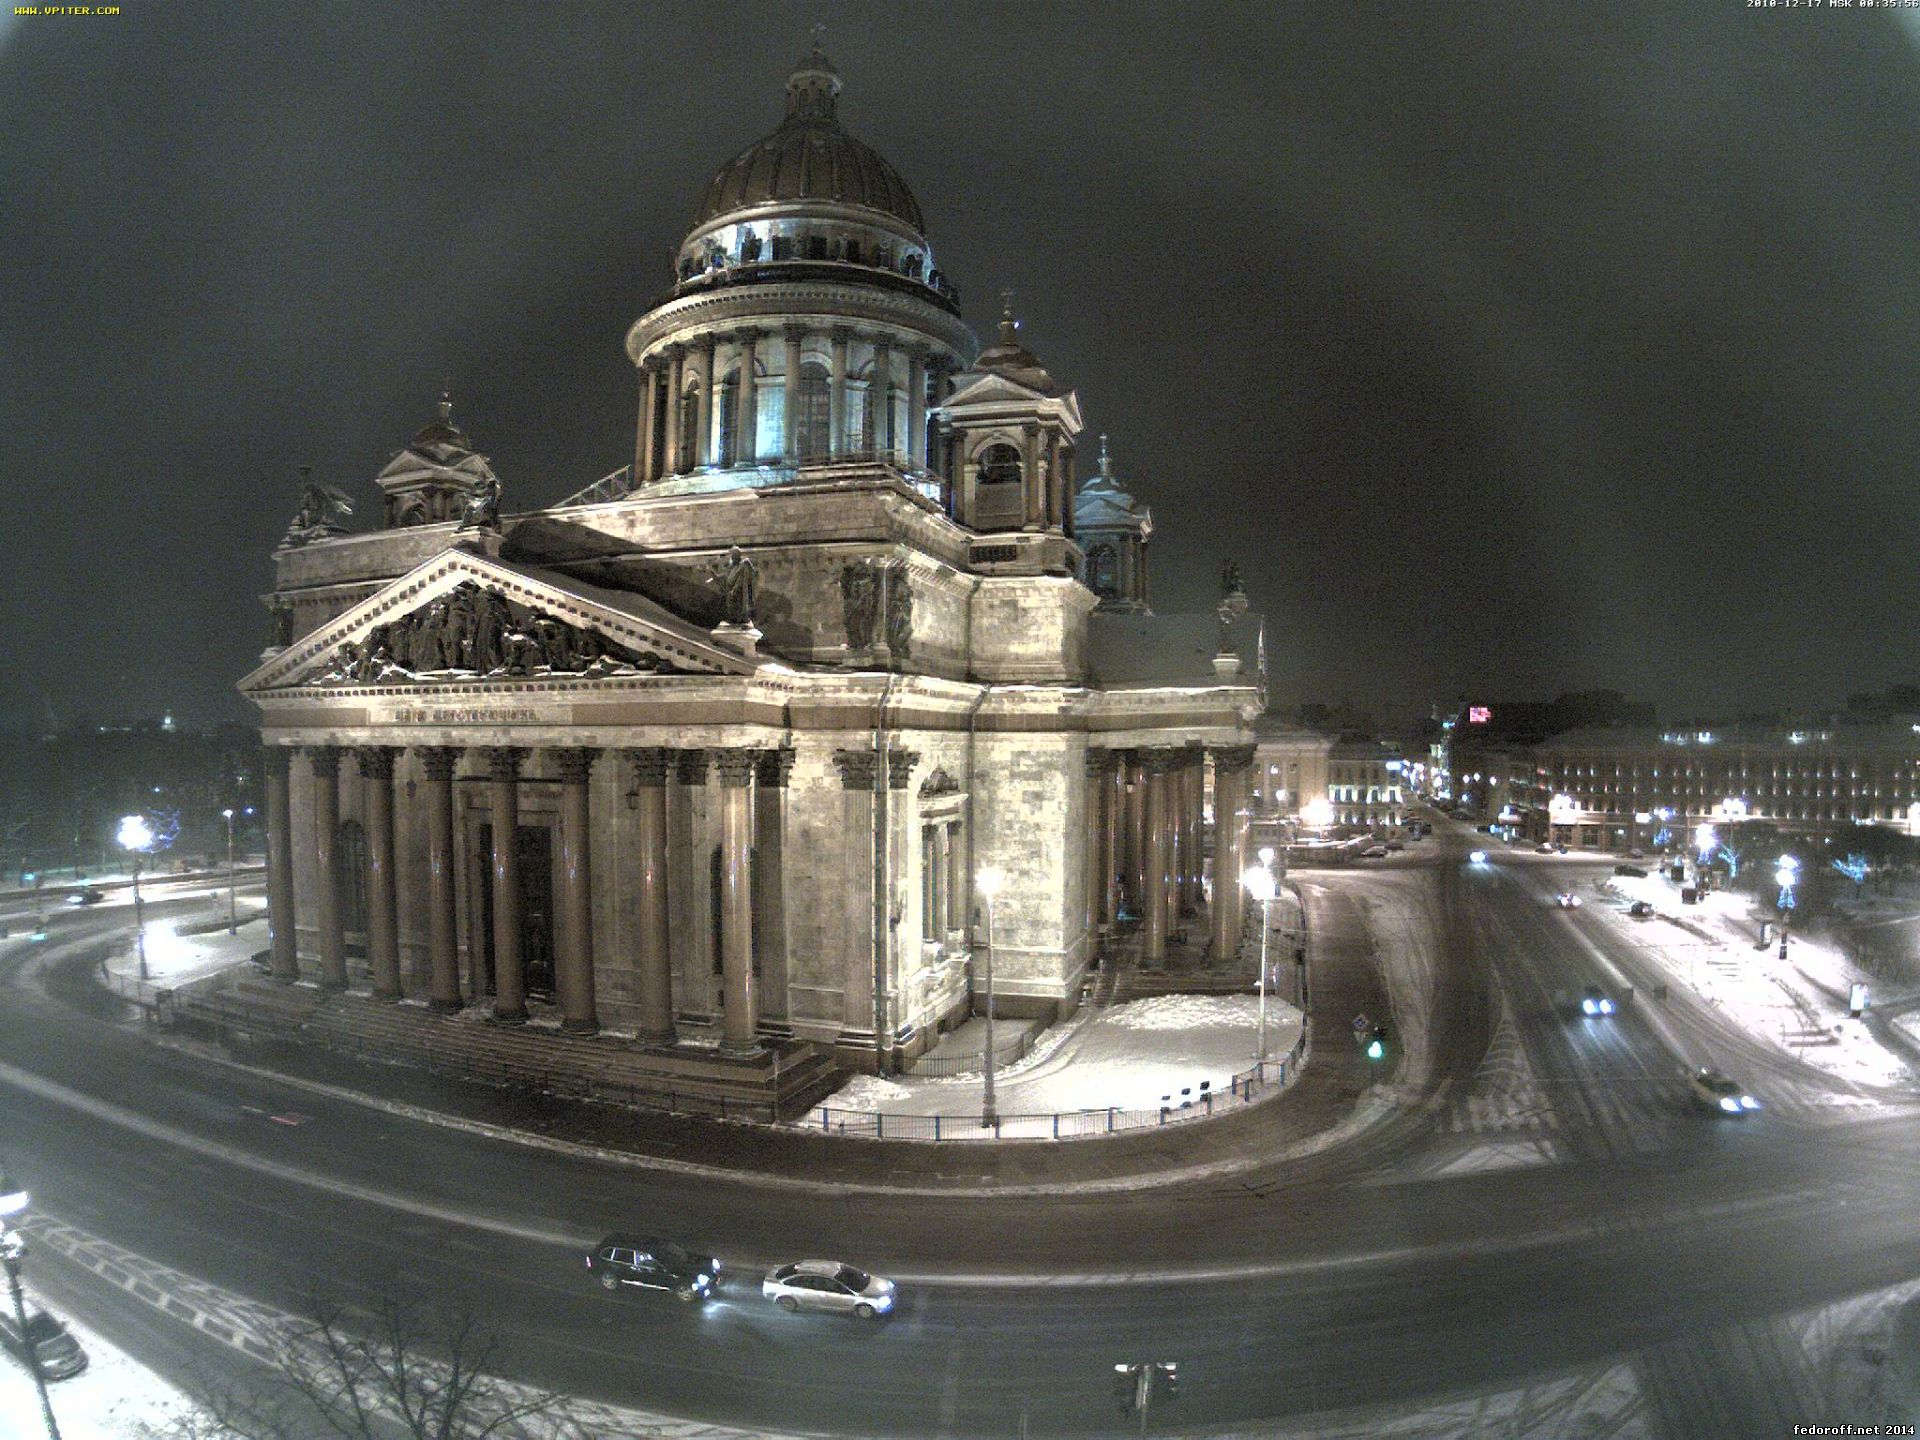 Веб камеры вокзалов в реальном времени. Видеокамеры Питера. Санкт-Петербург реальные фото. Питер в реальном времени.